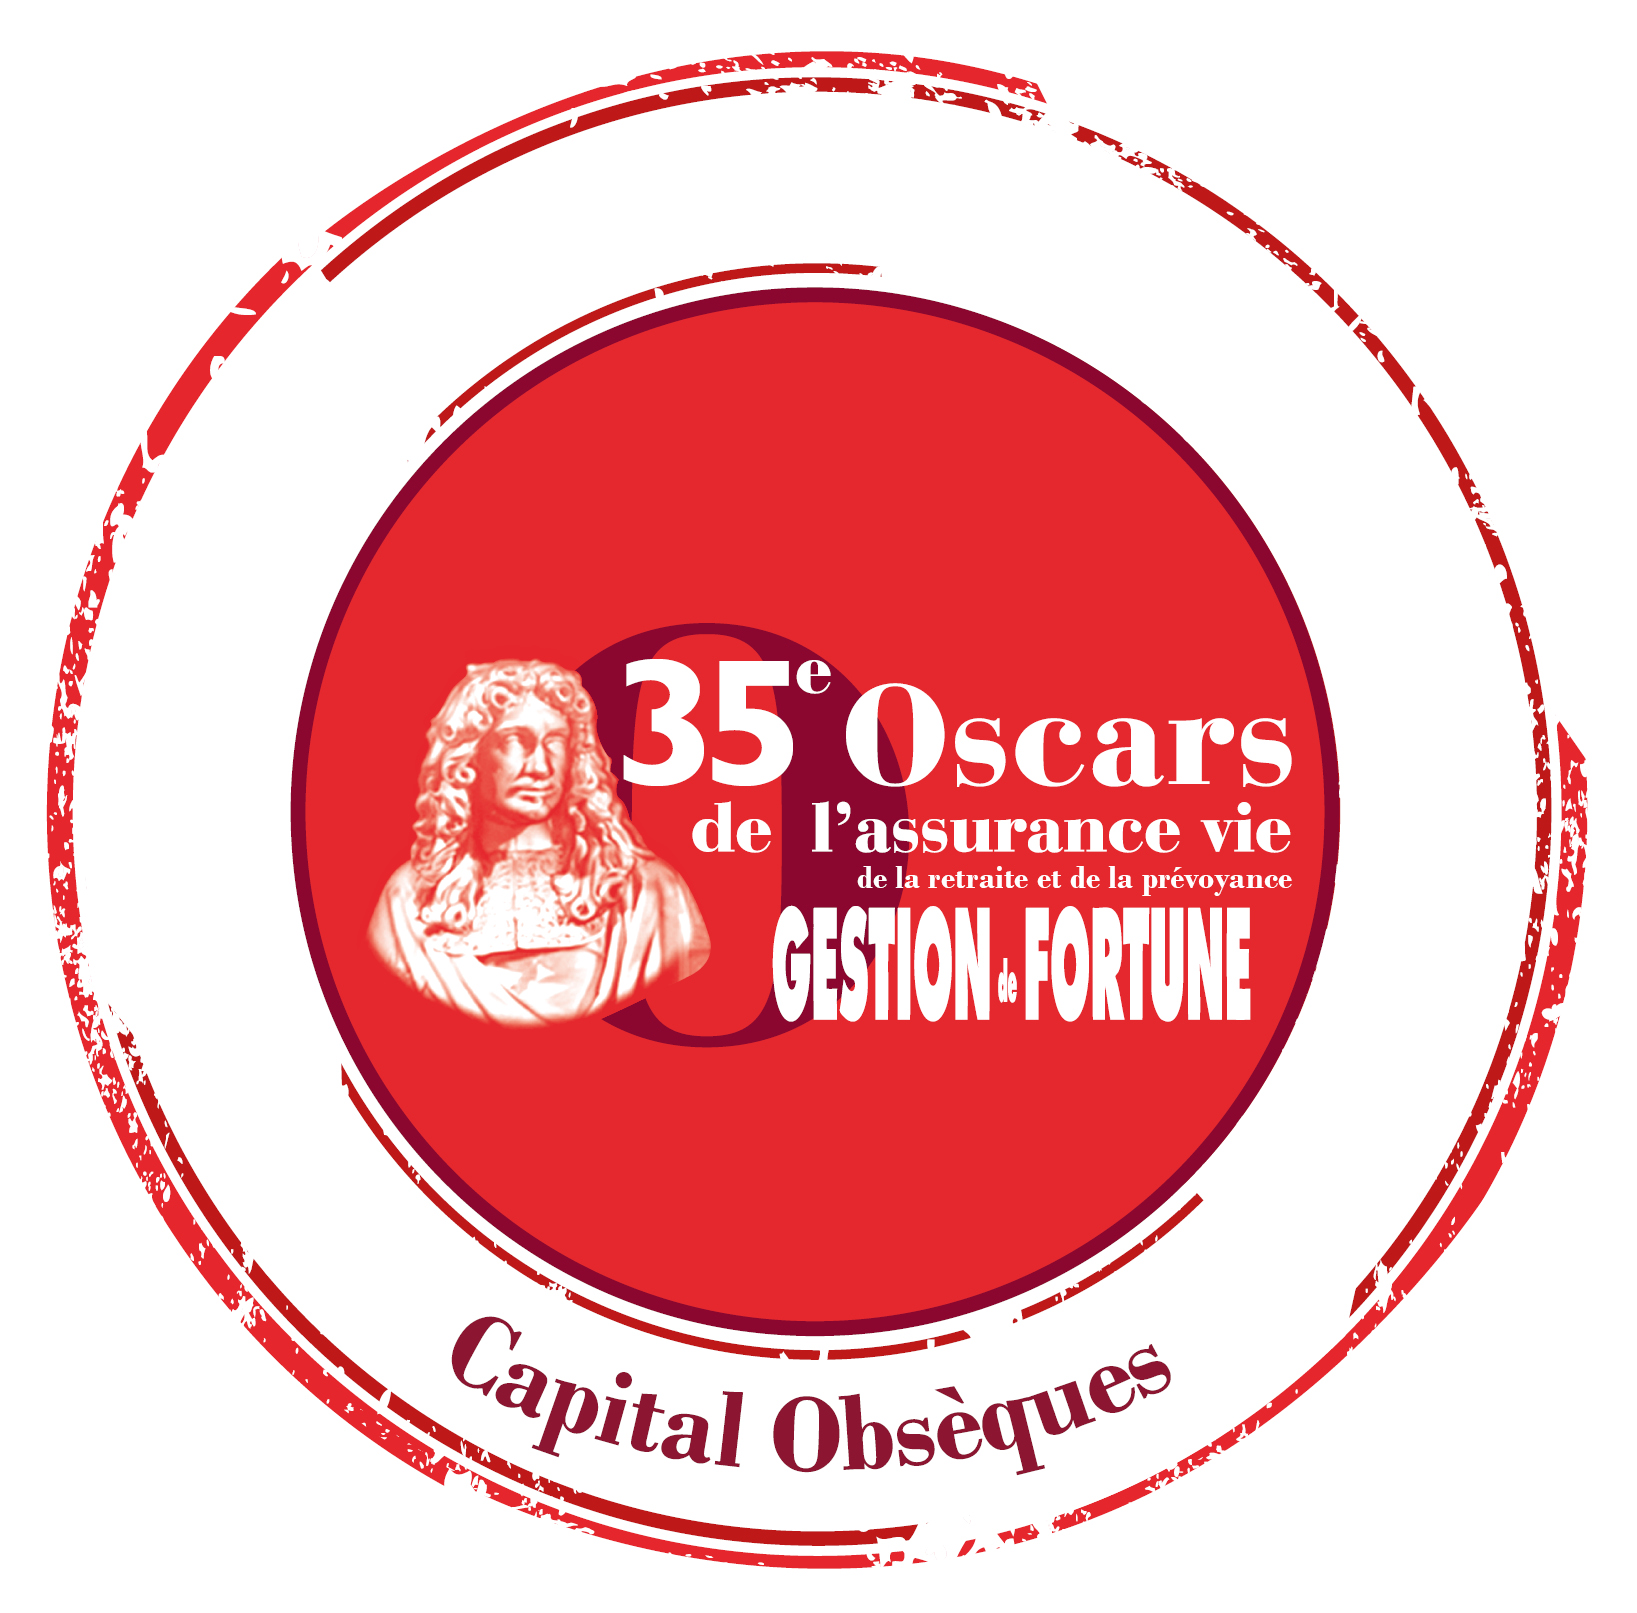 Oscar Capital Obsèques 2020